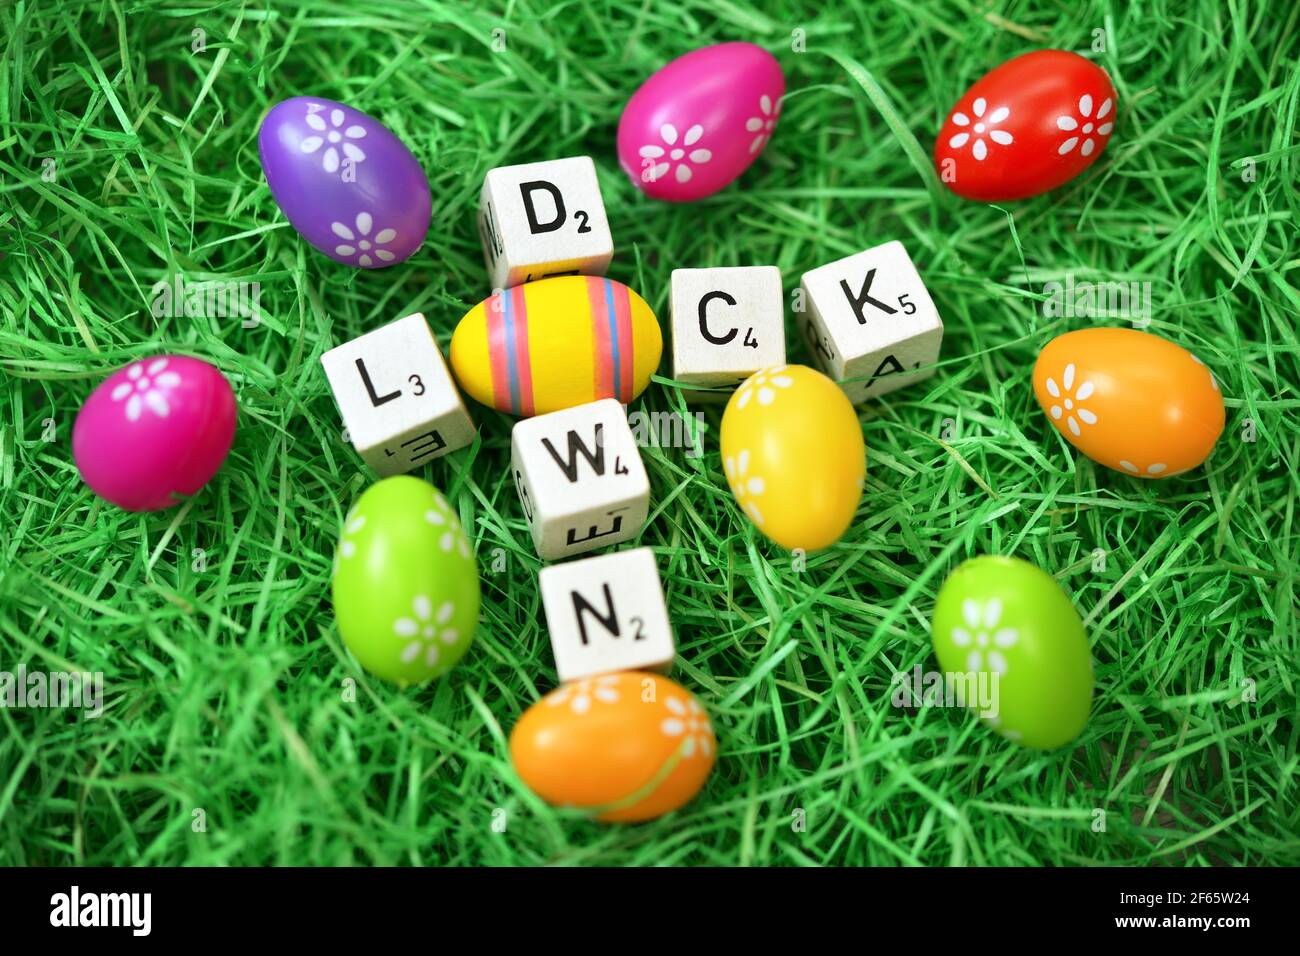 Cubos de la letra y huevo de Pascua que forman la palabra Lockdown Foto de stock